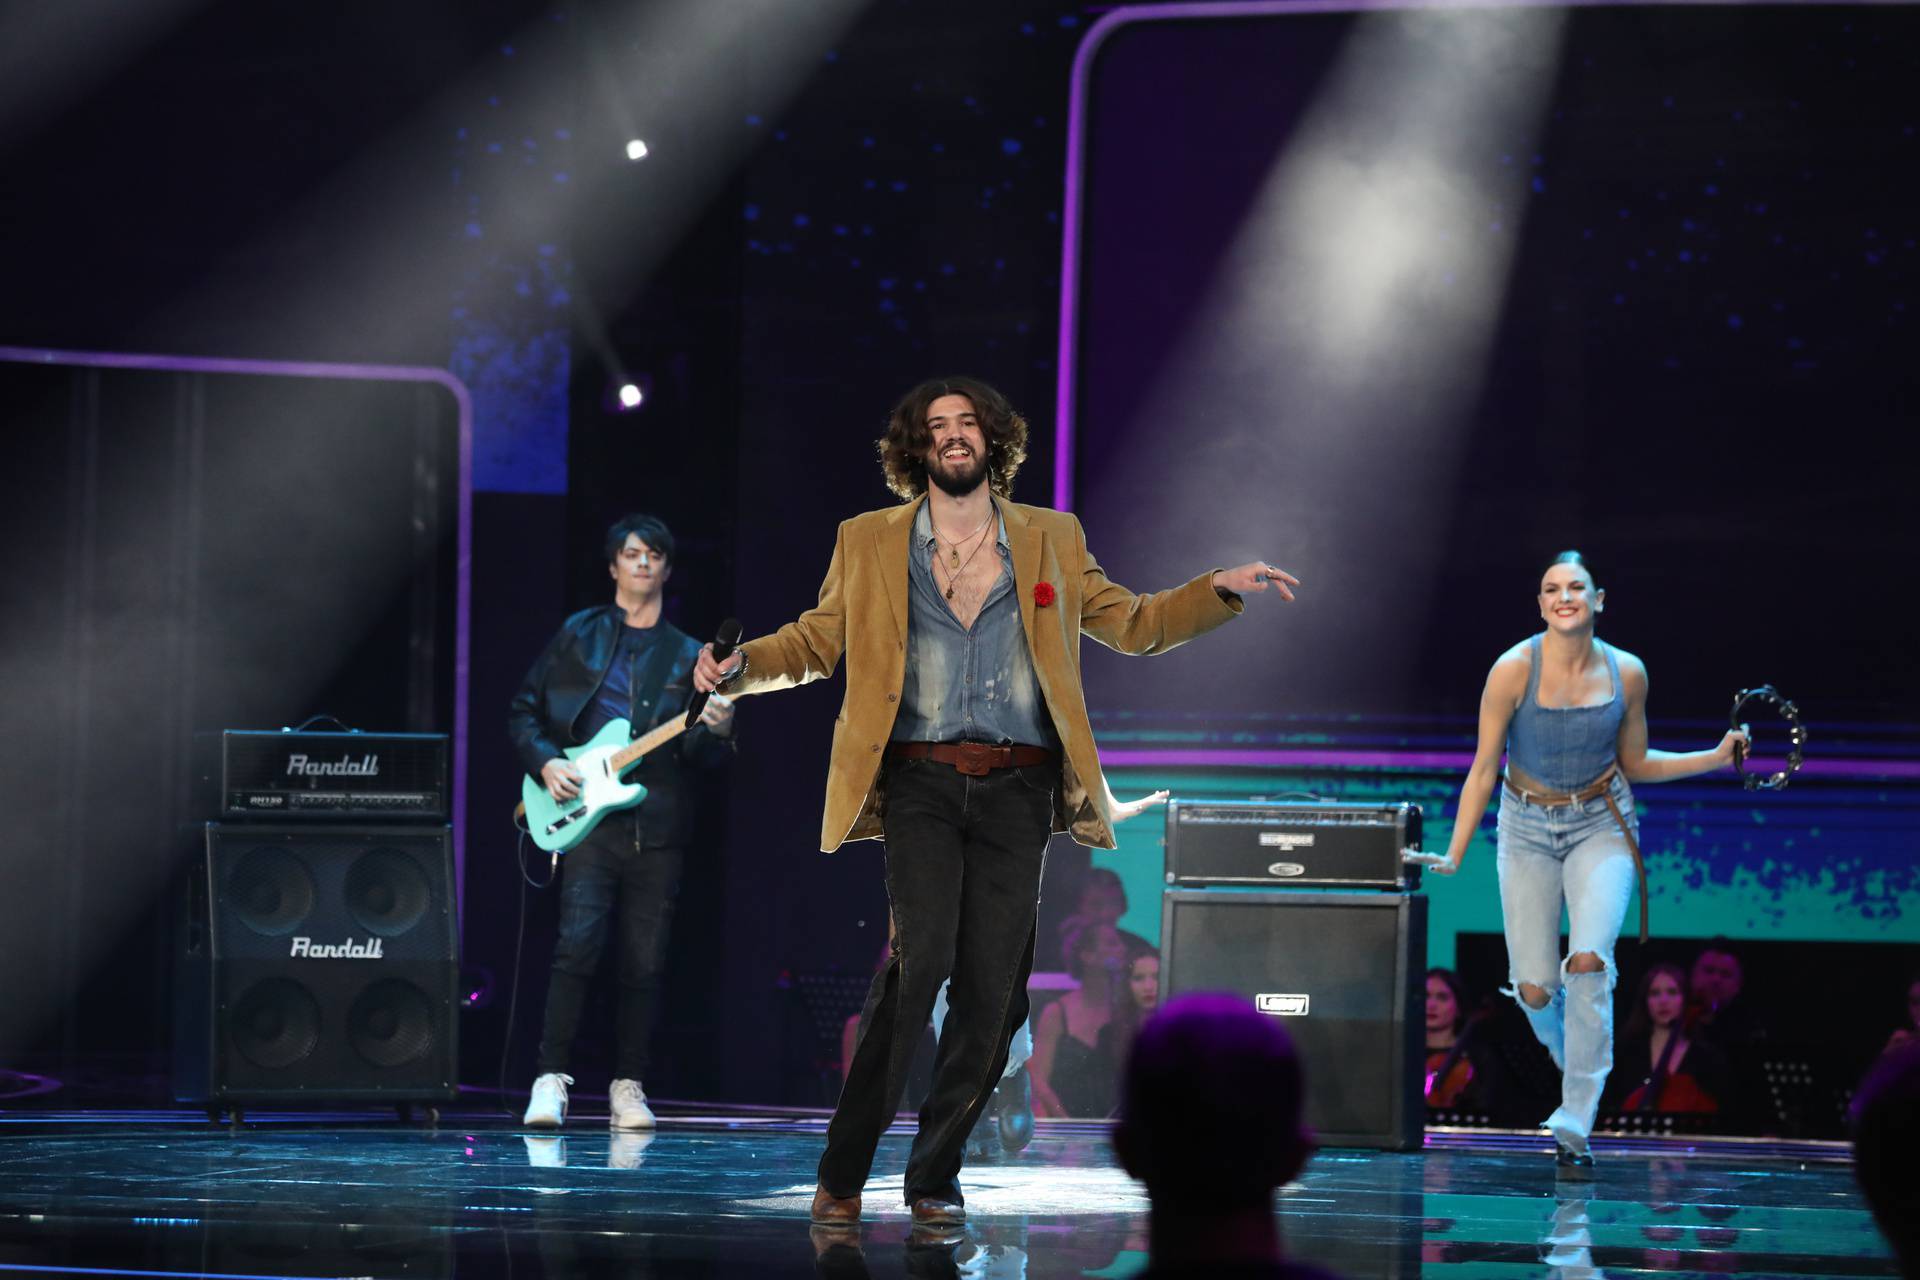 Četvero pjevača ušlo je u finale 'Superstara', tko će pobijediti?